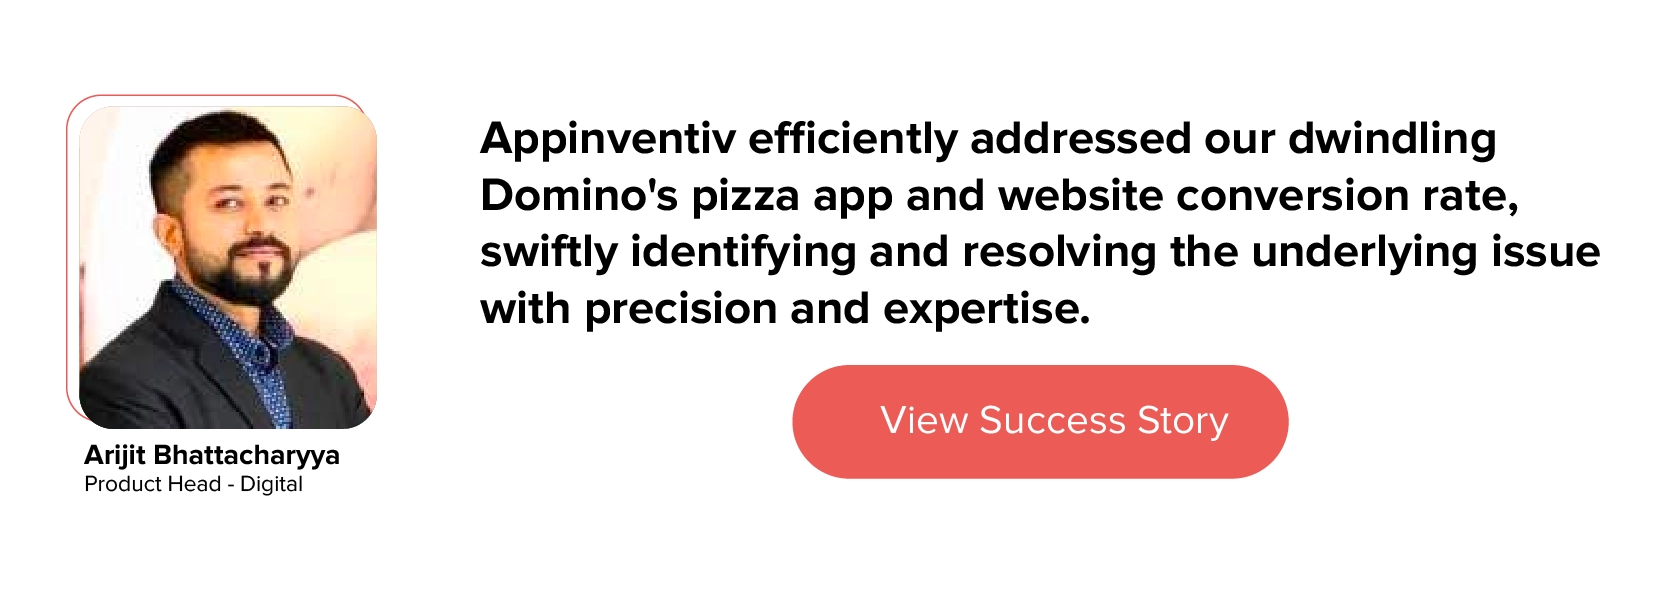 Как мы сотрудничали с Domino's для совершенствования ее стратегии UI/UX.